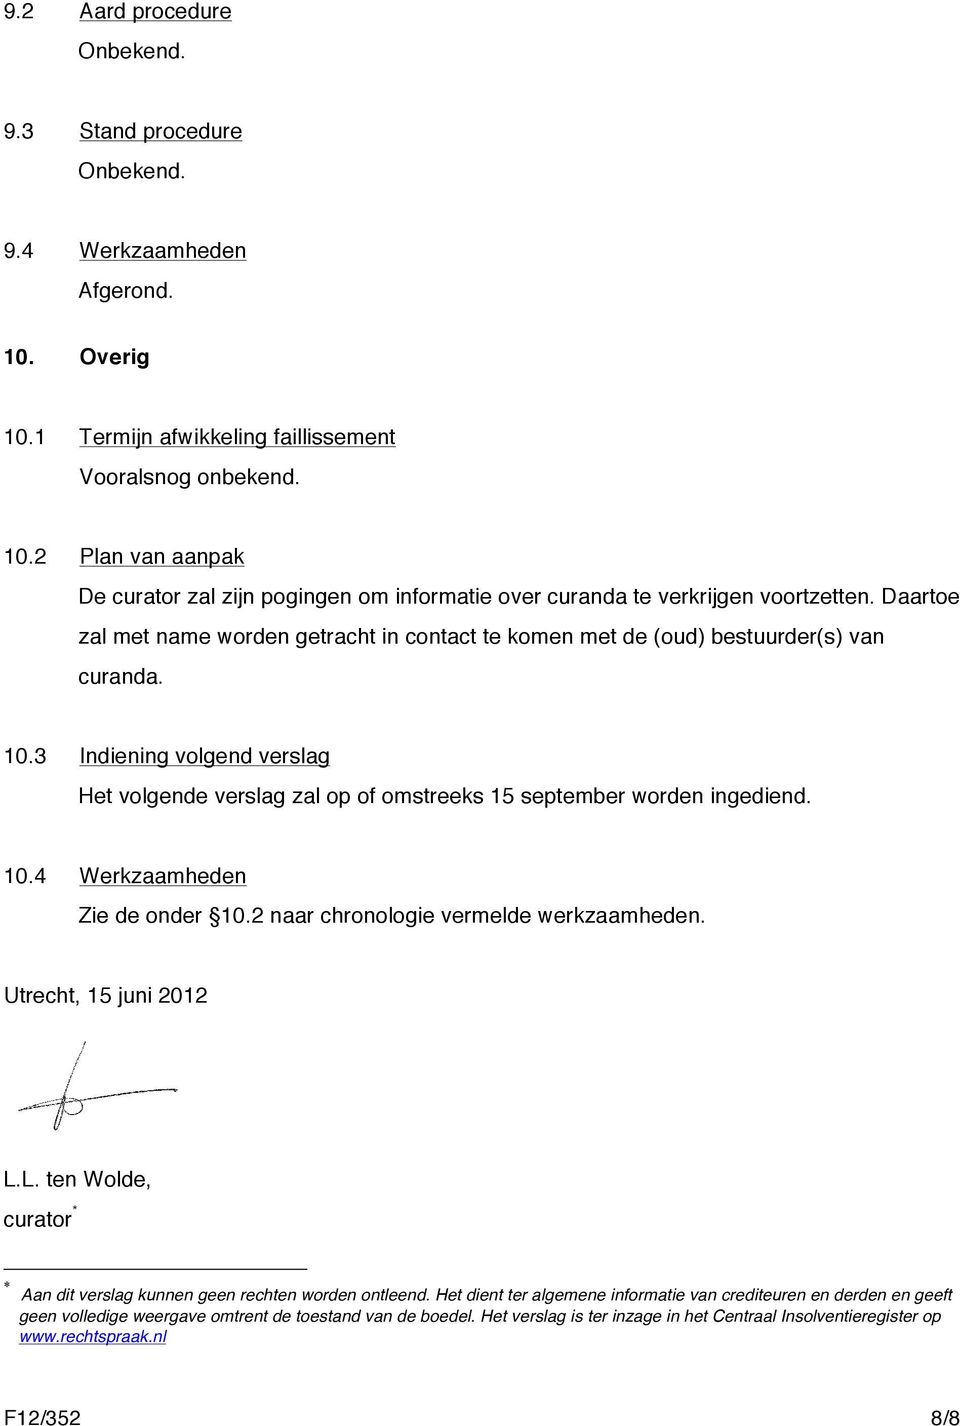 10.4 Werkzaamheden Zie de onder 10.2 naar chronologie vermelde werkzaamheden. Utrecht, 15 juni 2012 L.L. ten Wolde, curator * * Aan dit verslag kunnen geen rechten worden ontleend.